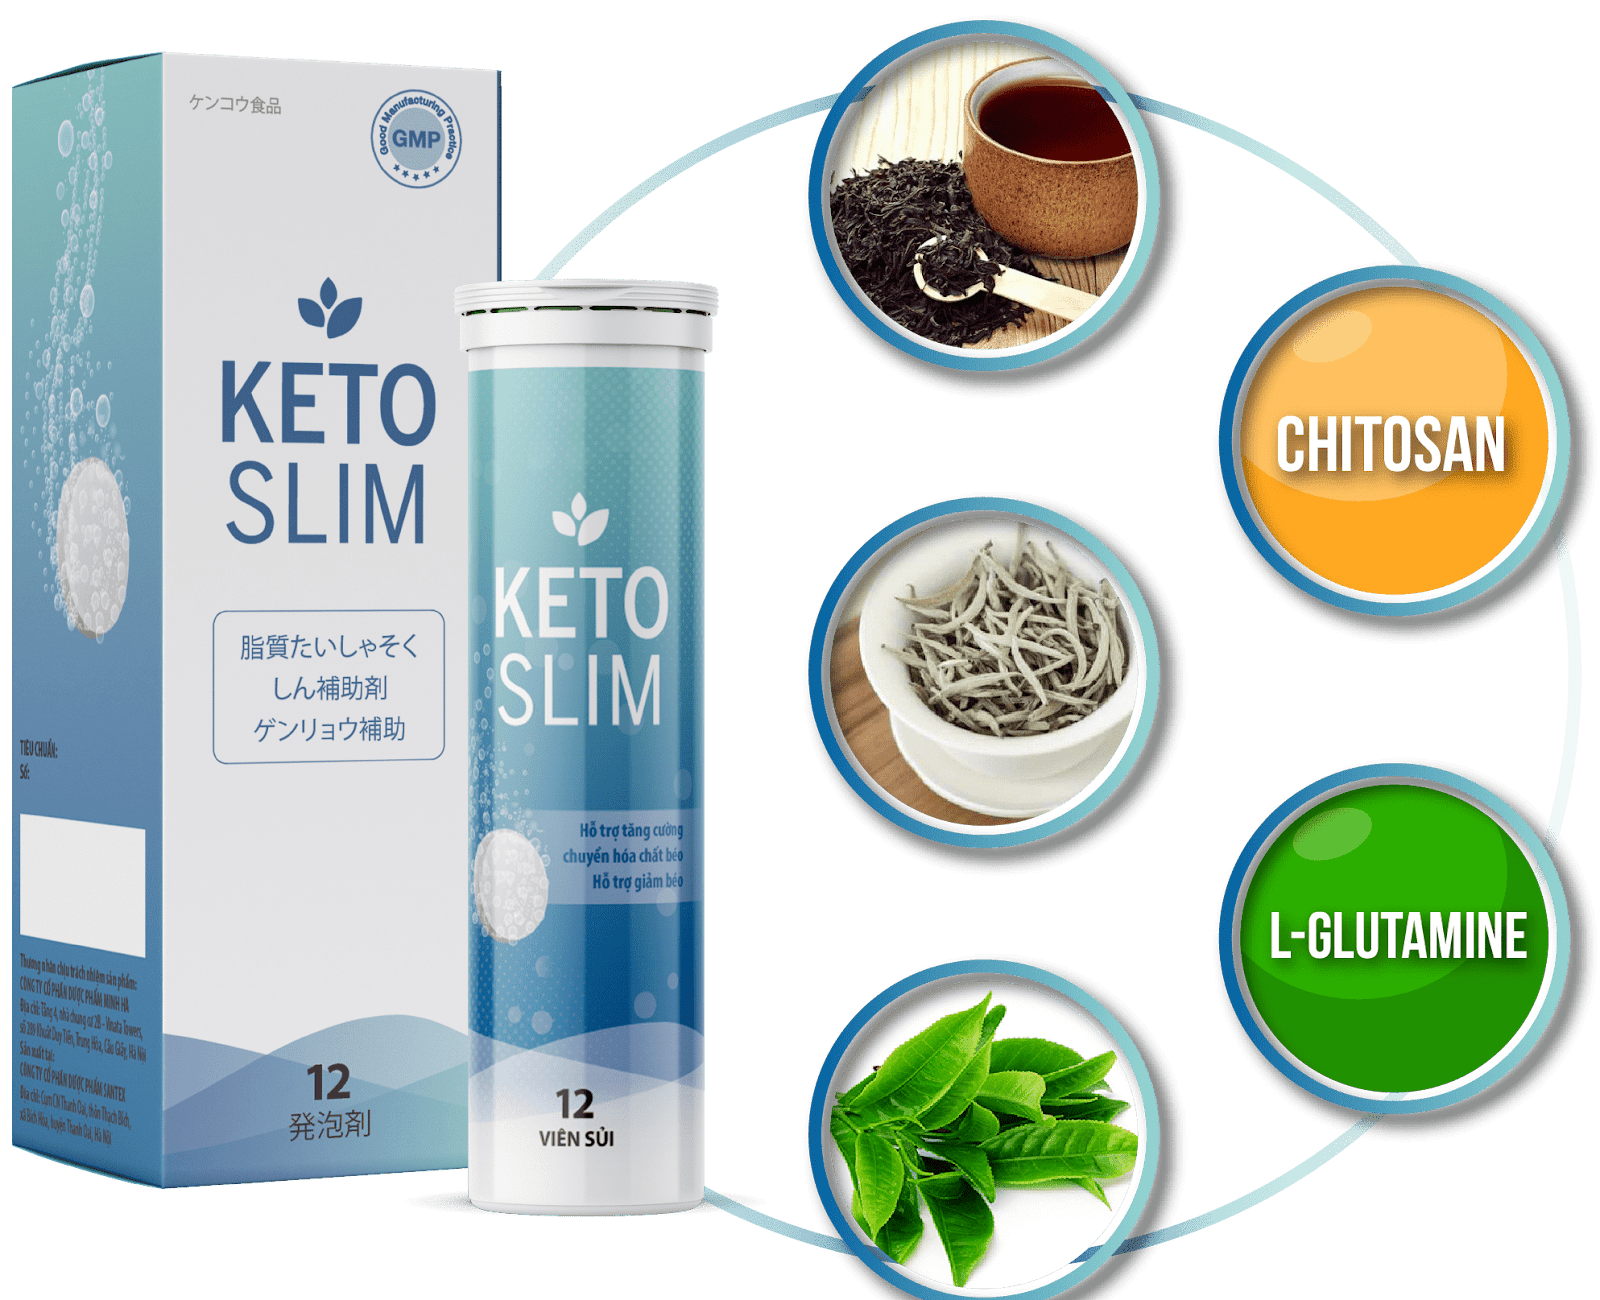 Hiệu quả giảm cân của sản phẩm Keto Slim viên sủi ra sao?